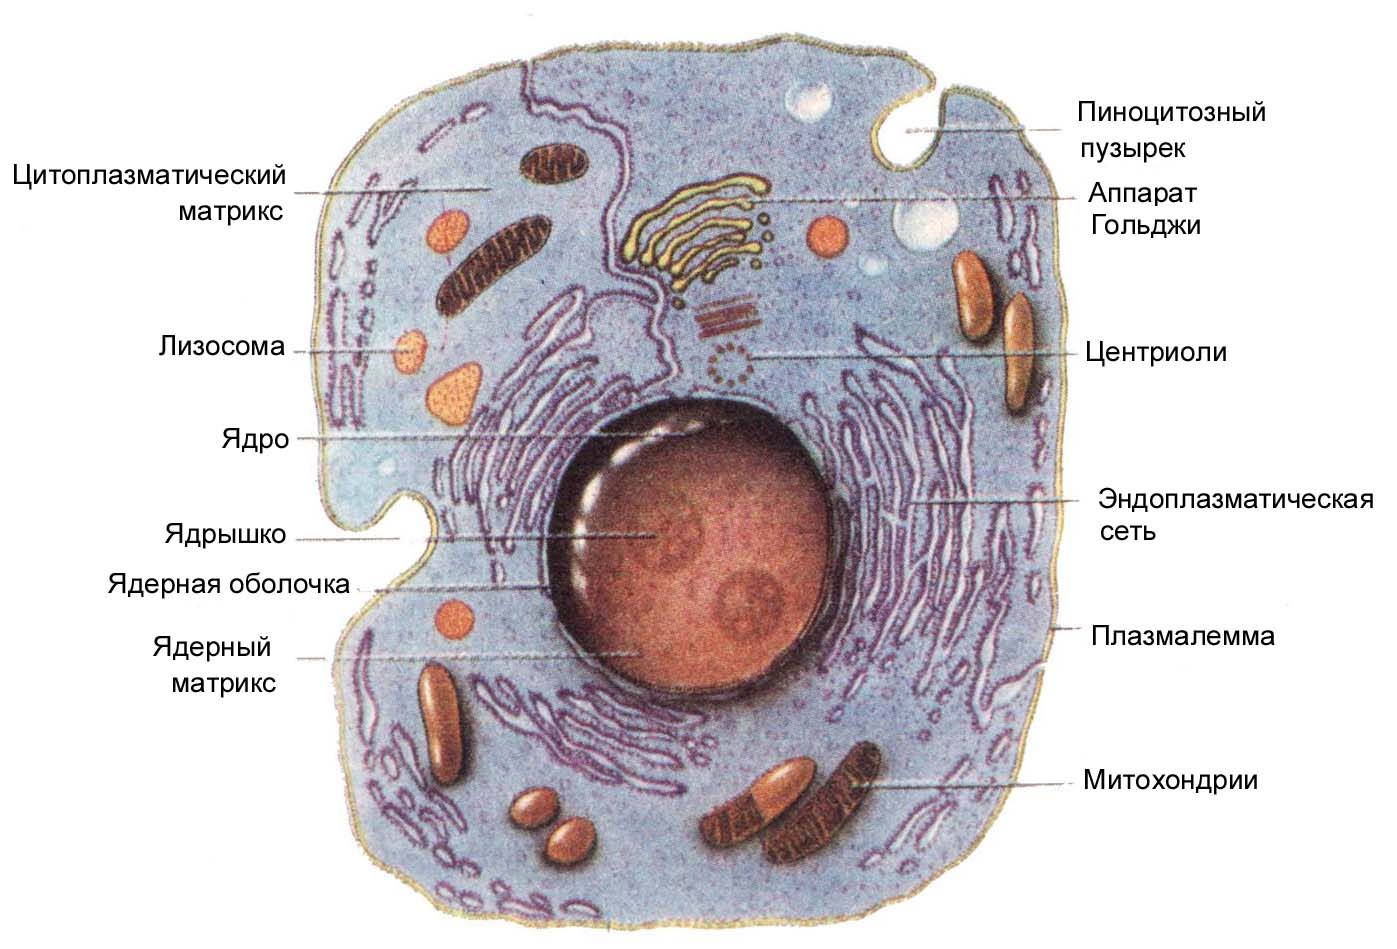 Схема строения животной клетки